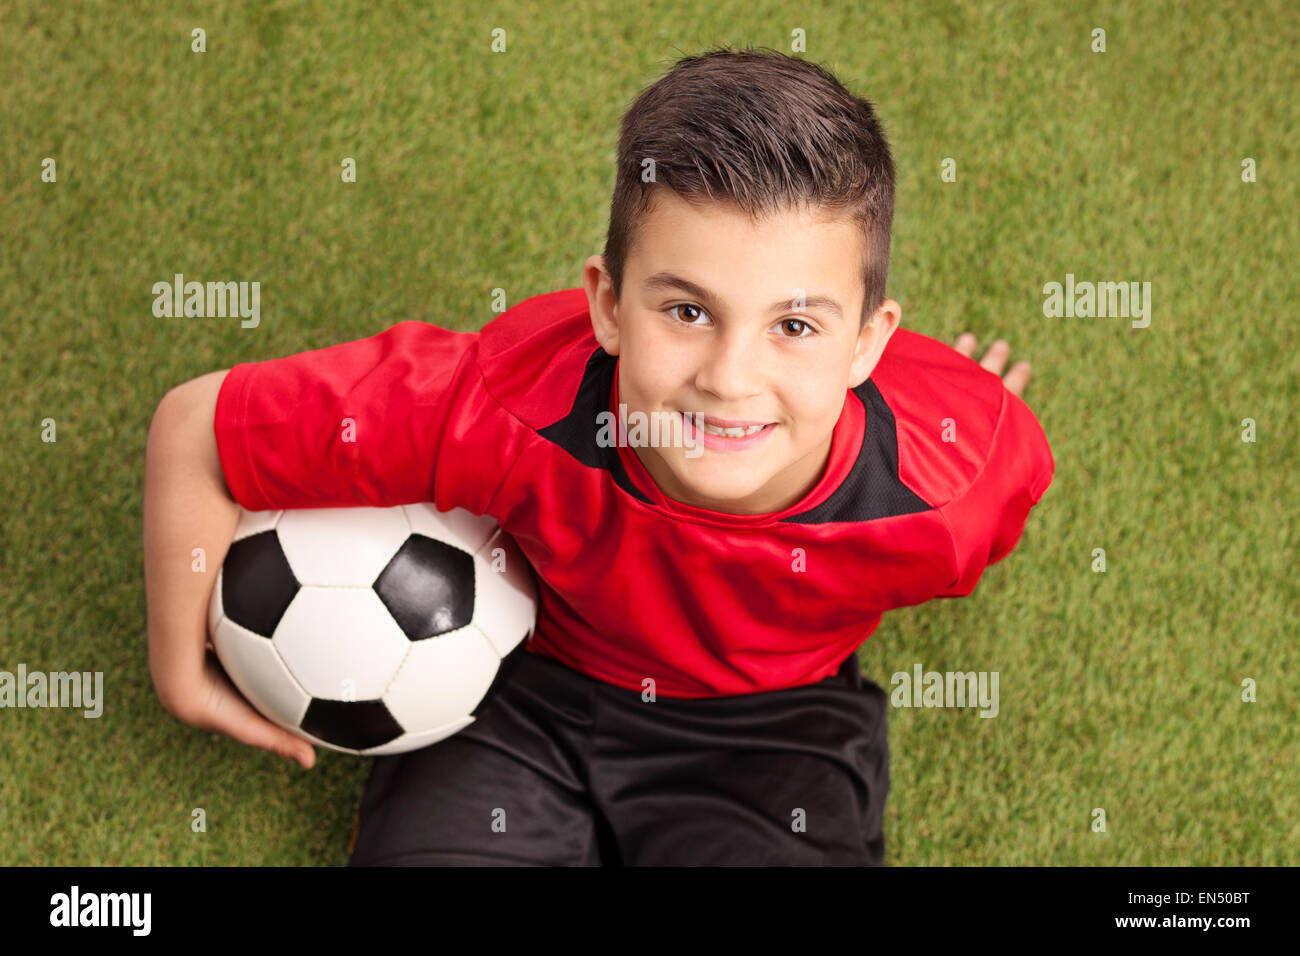 Un alto ángulo de disparo de un jugador de fútbol junior en una camiseta roja sentada sobre la hierba y sonriente sosteniendo un balón Foto de stock